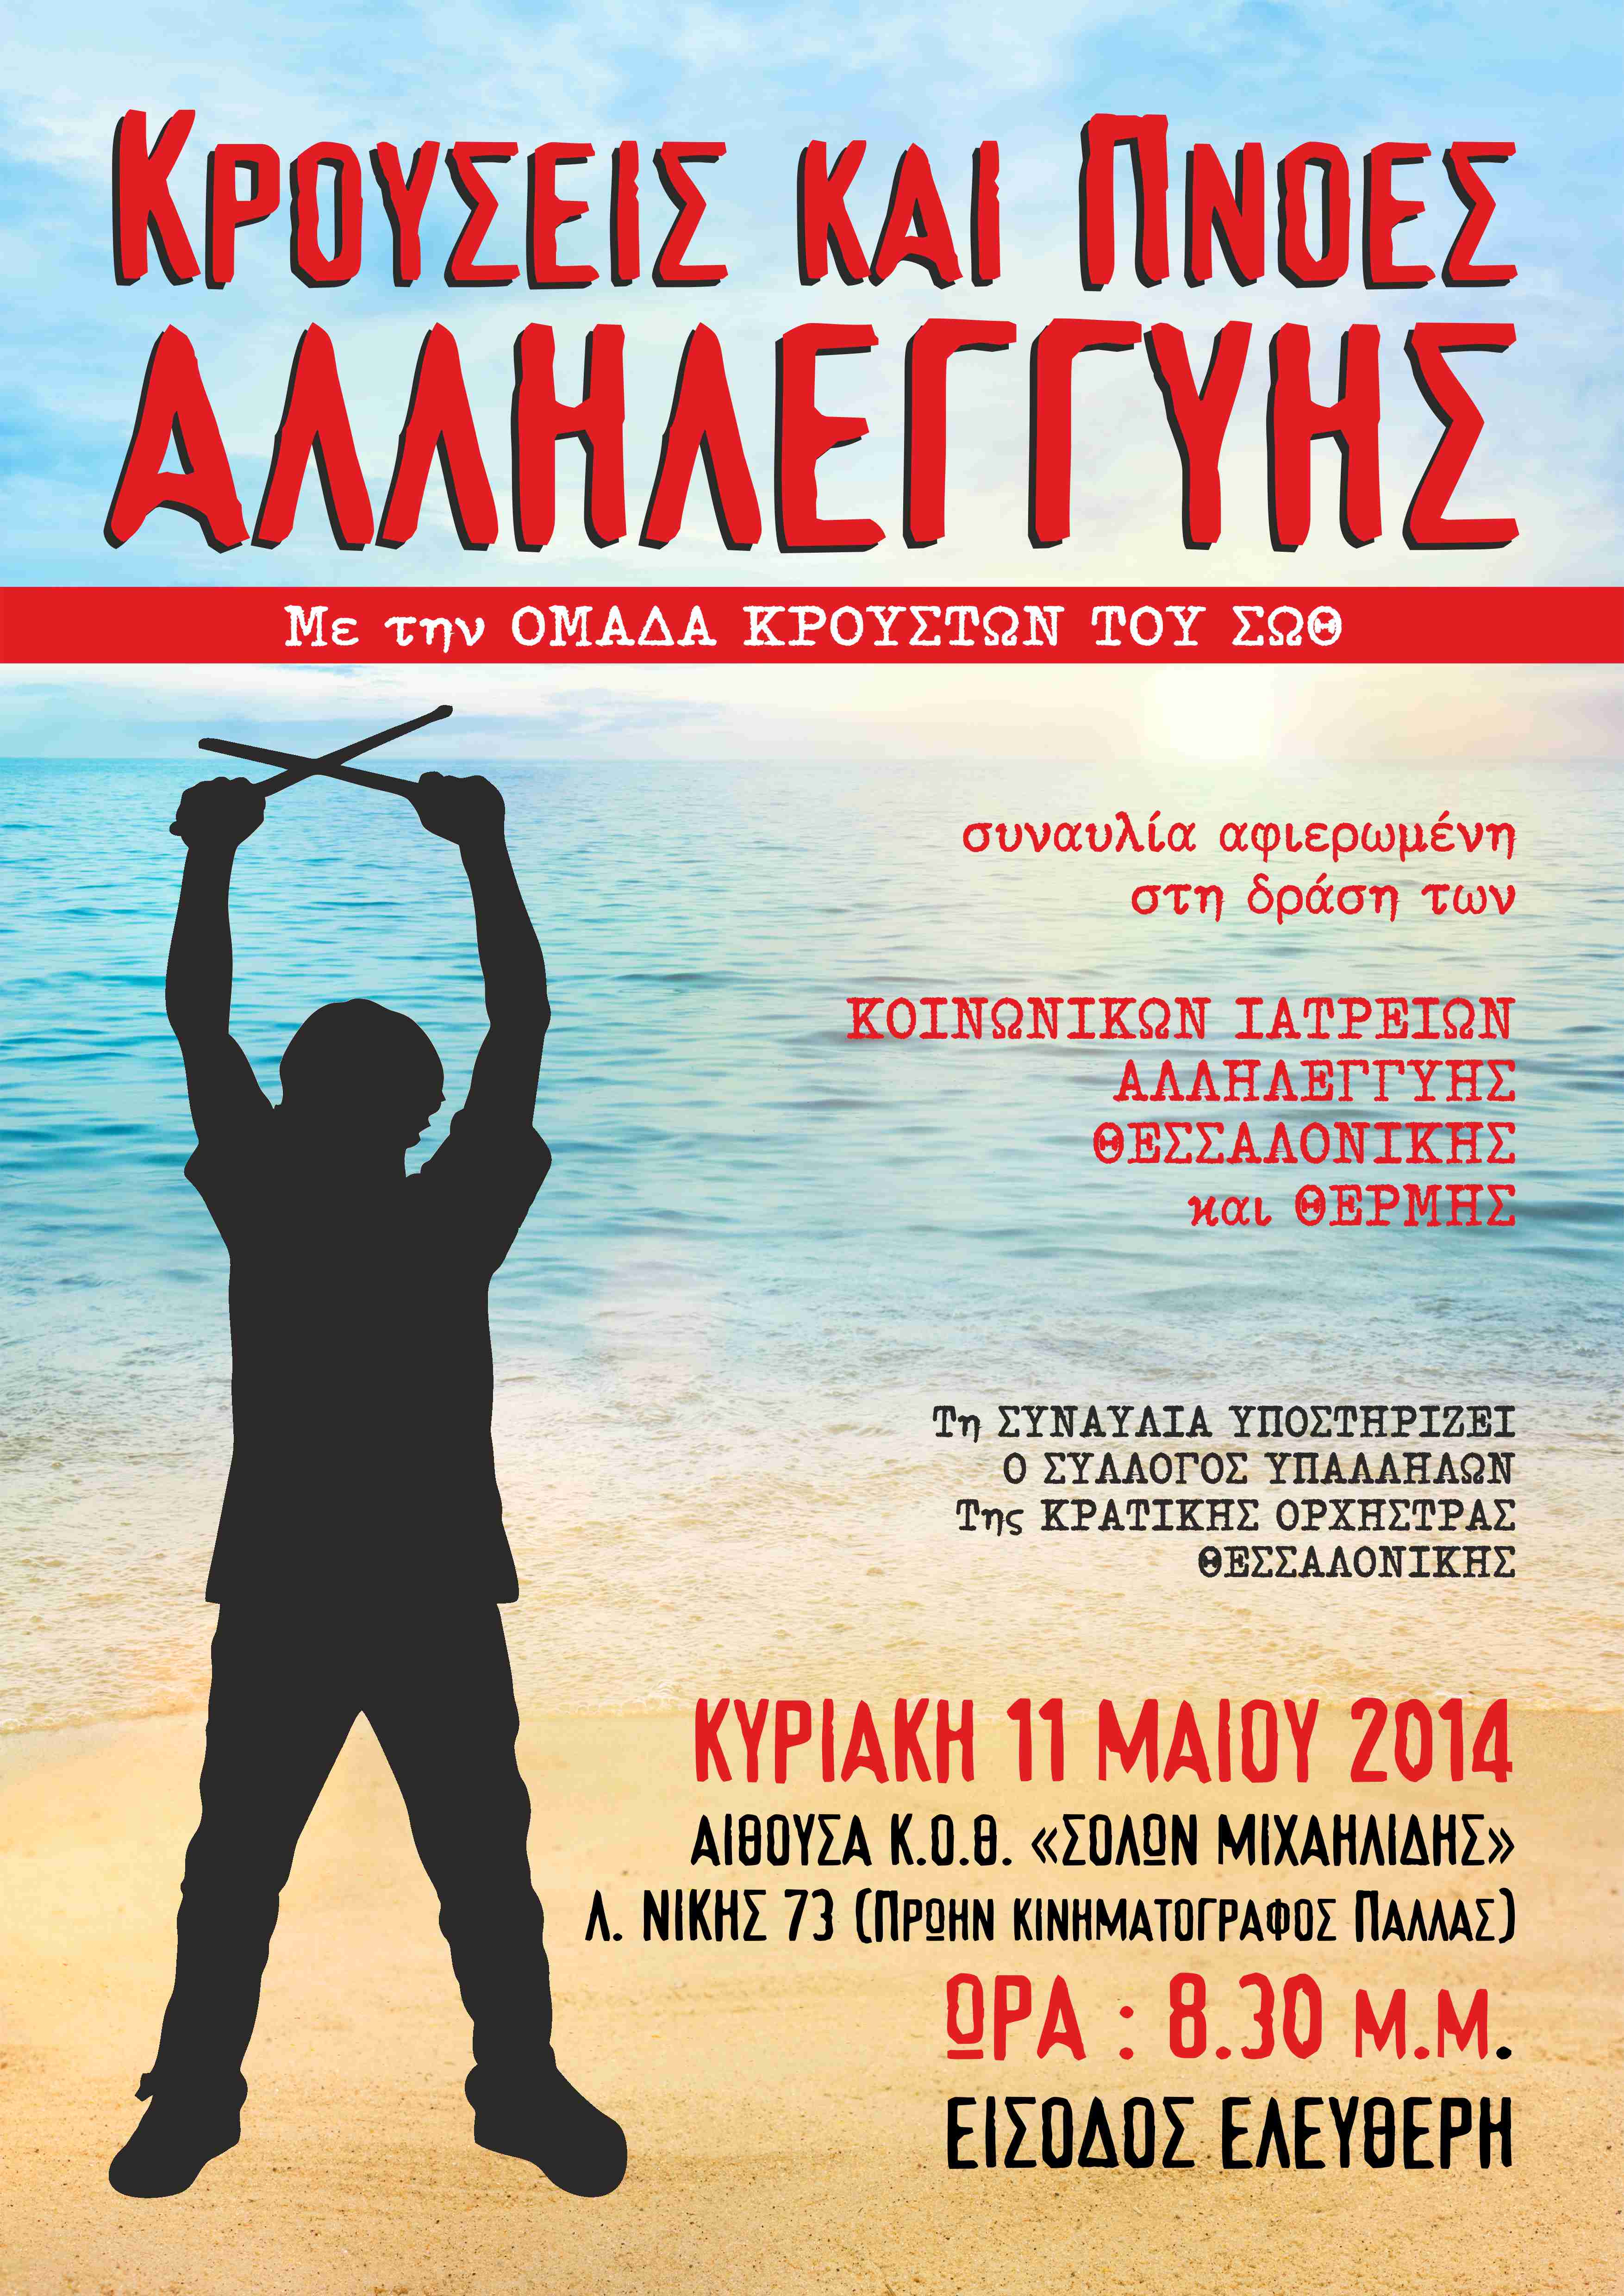 Συναυλία αφιερωμένη στη δράση των Κοινωνικών Ιατρείων Θεσσαλονίκης και Θέρμης